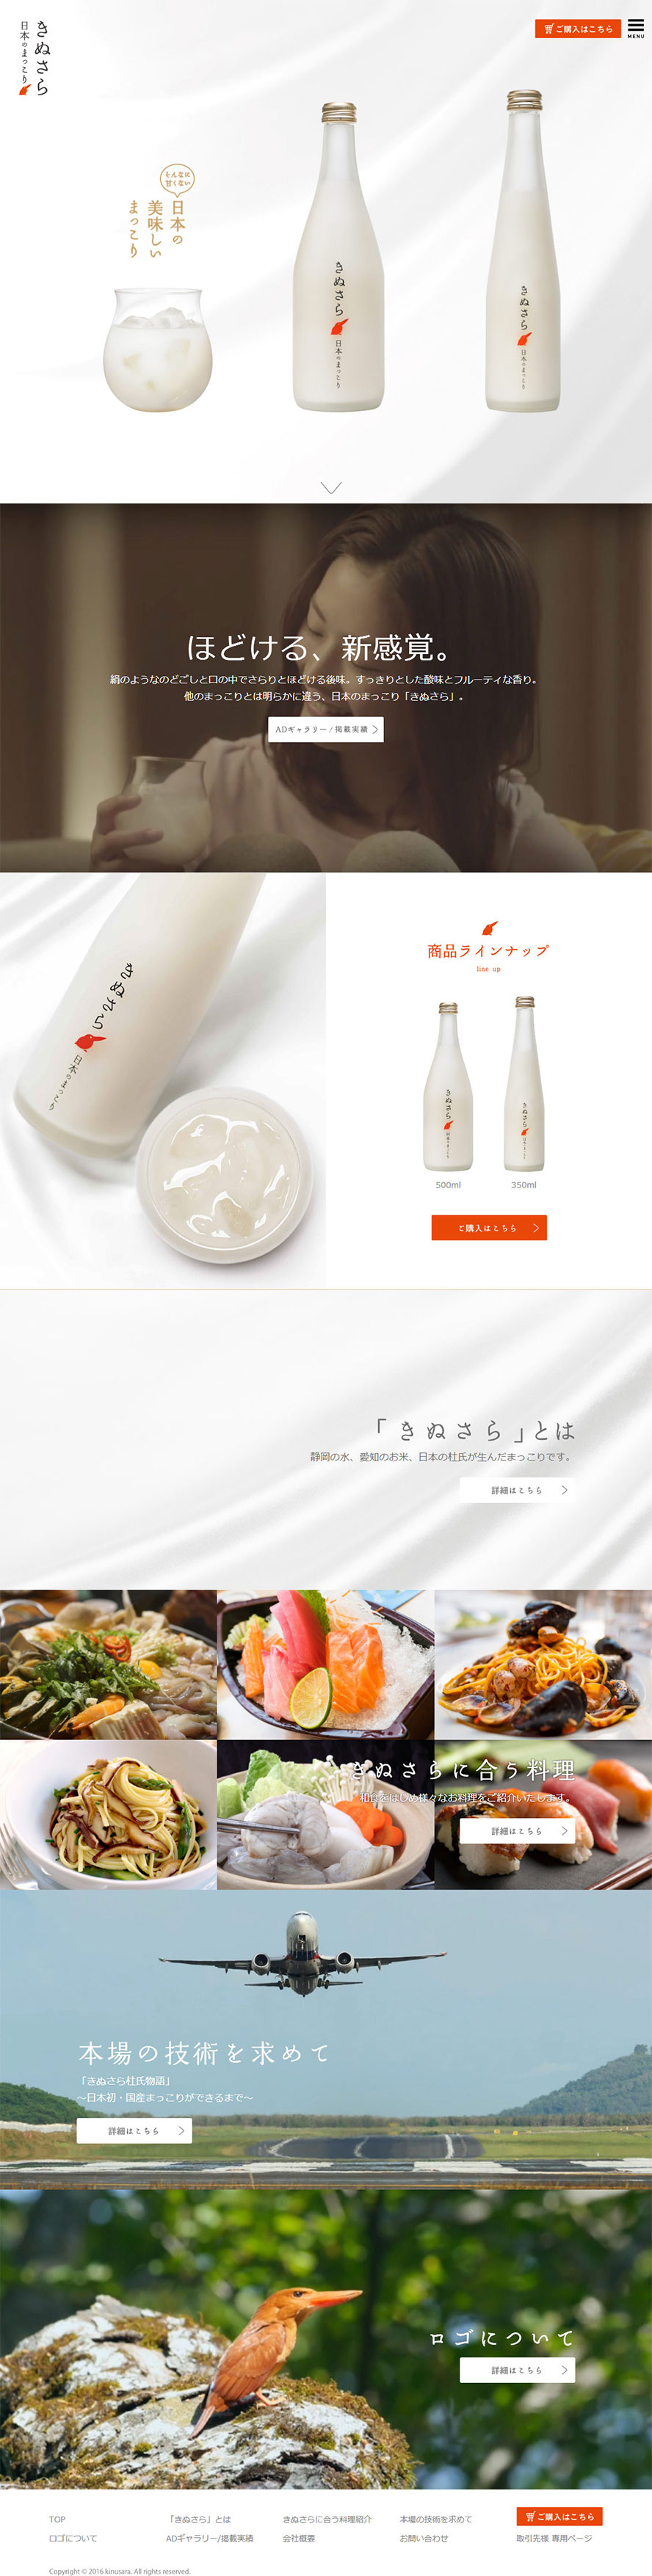 日本Kinusara米酒网站